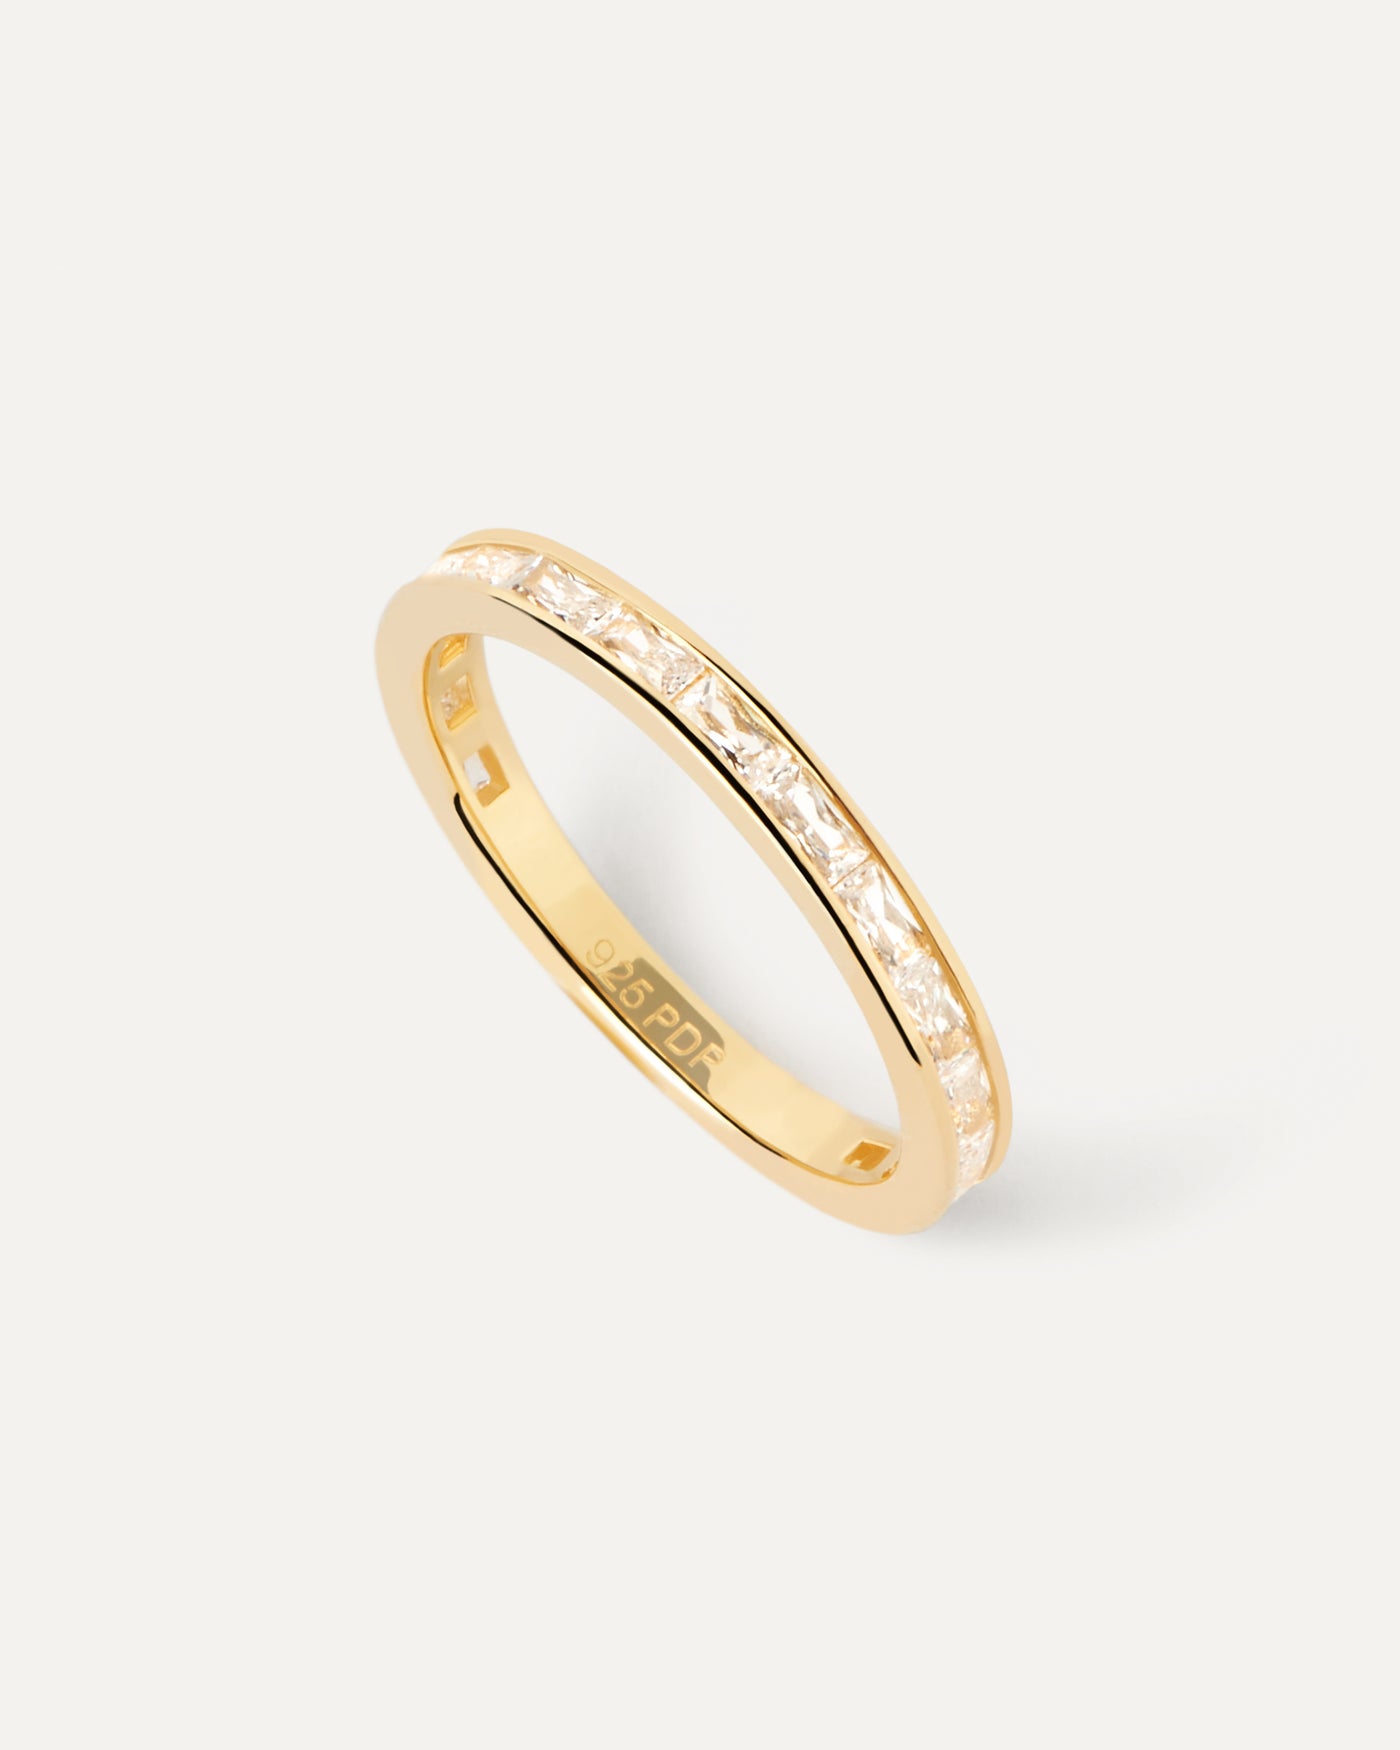 Viena Ring. Vergoldeter Eternity ring mit rechteckigem weißem Zirkon im Rechteckschliff. Erhalten Sie die neuesten Produkte von PDPAOLA. Geben Sie Ihre Bestellung sicher auf und erhalten Sie diesen Bestseller.